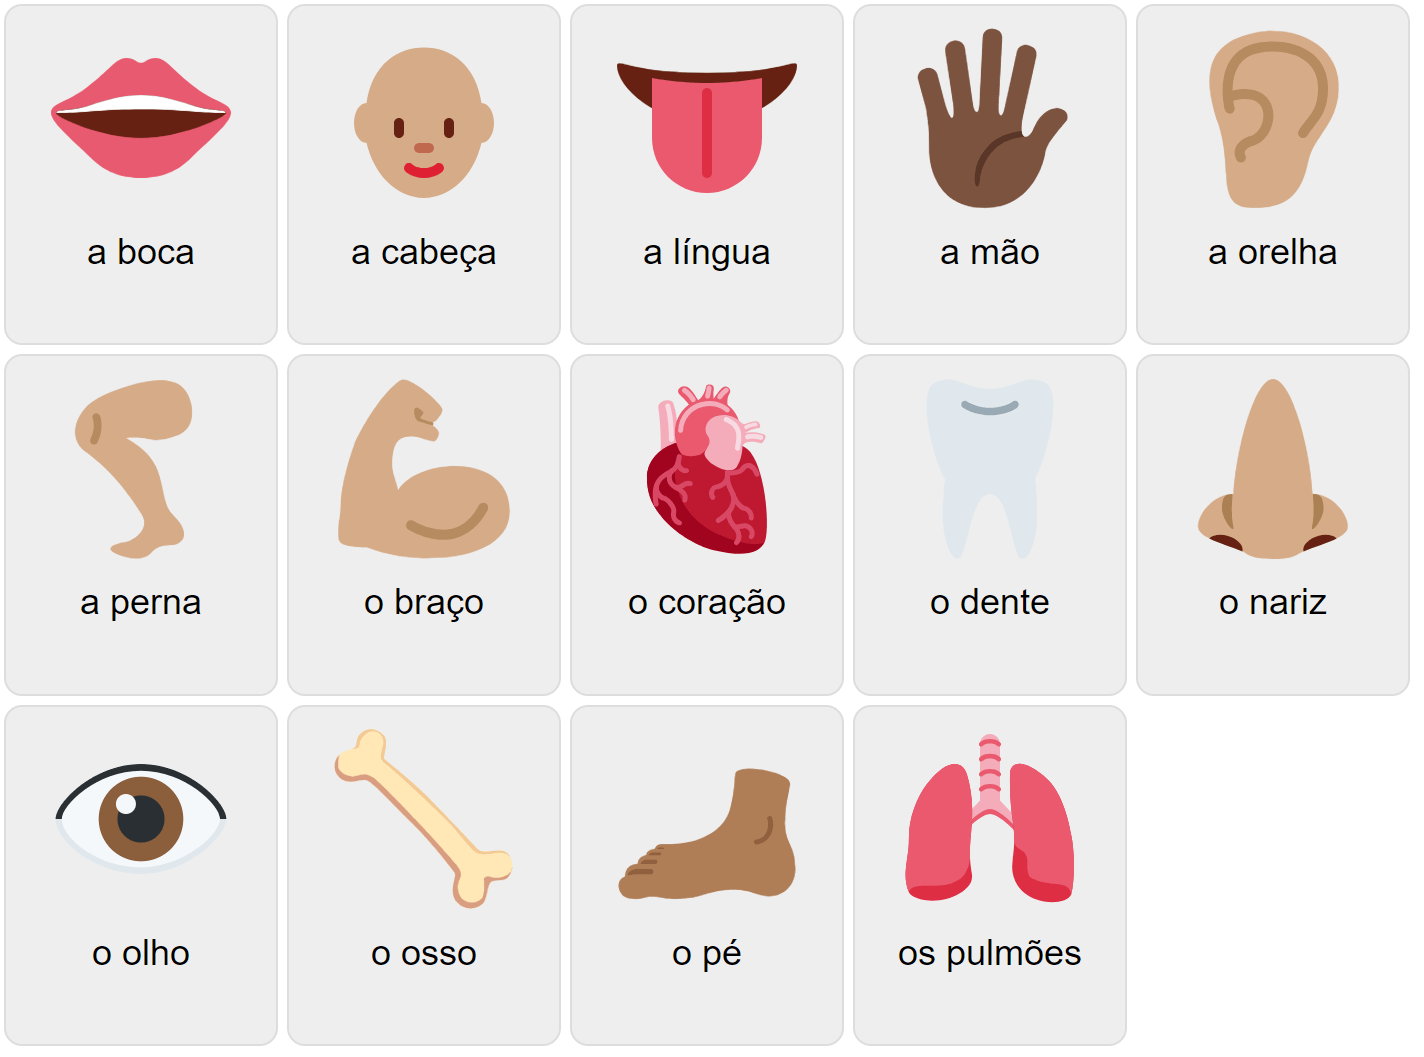 Kroppsdelar på portugisiska